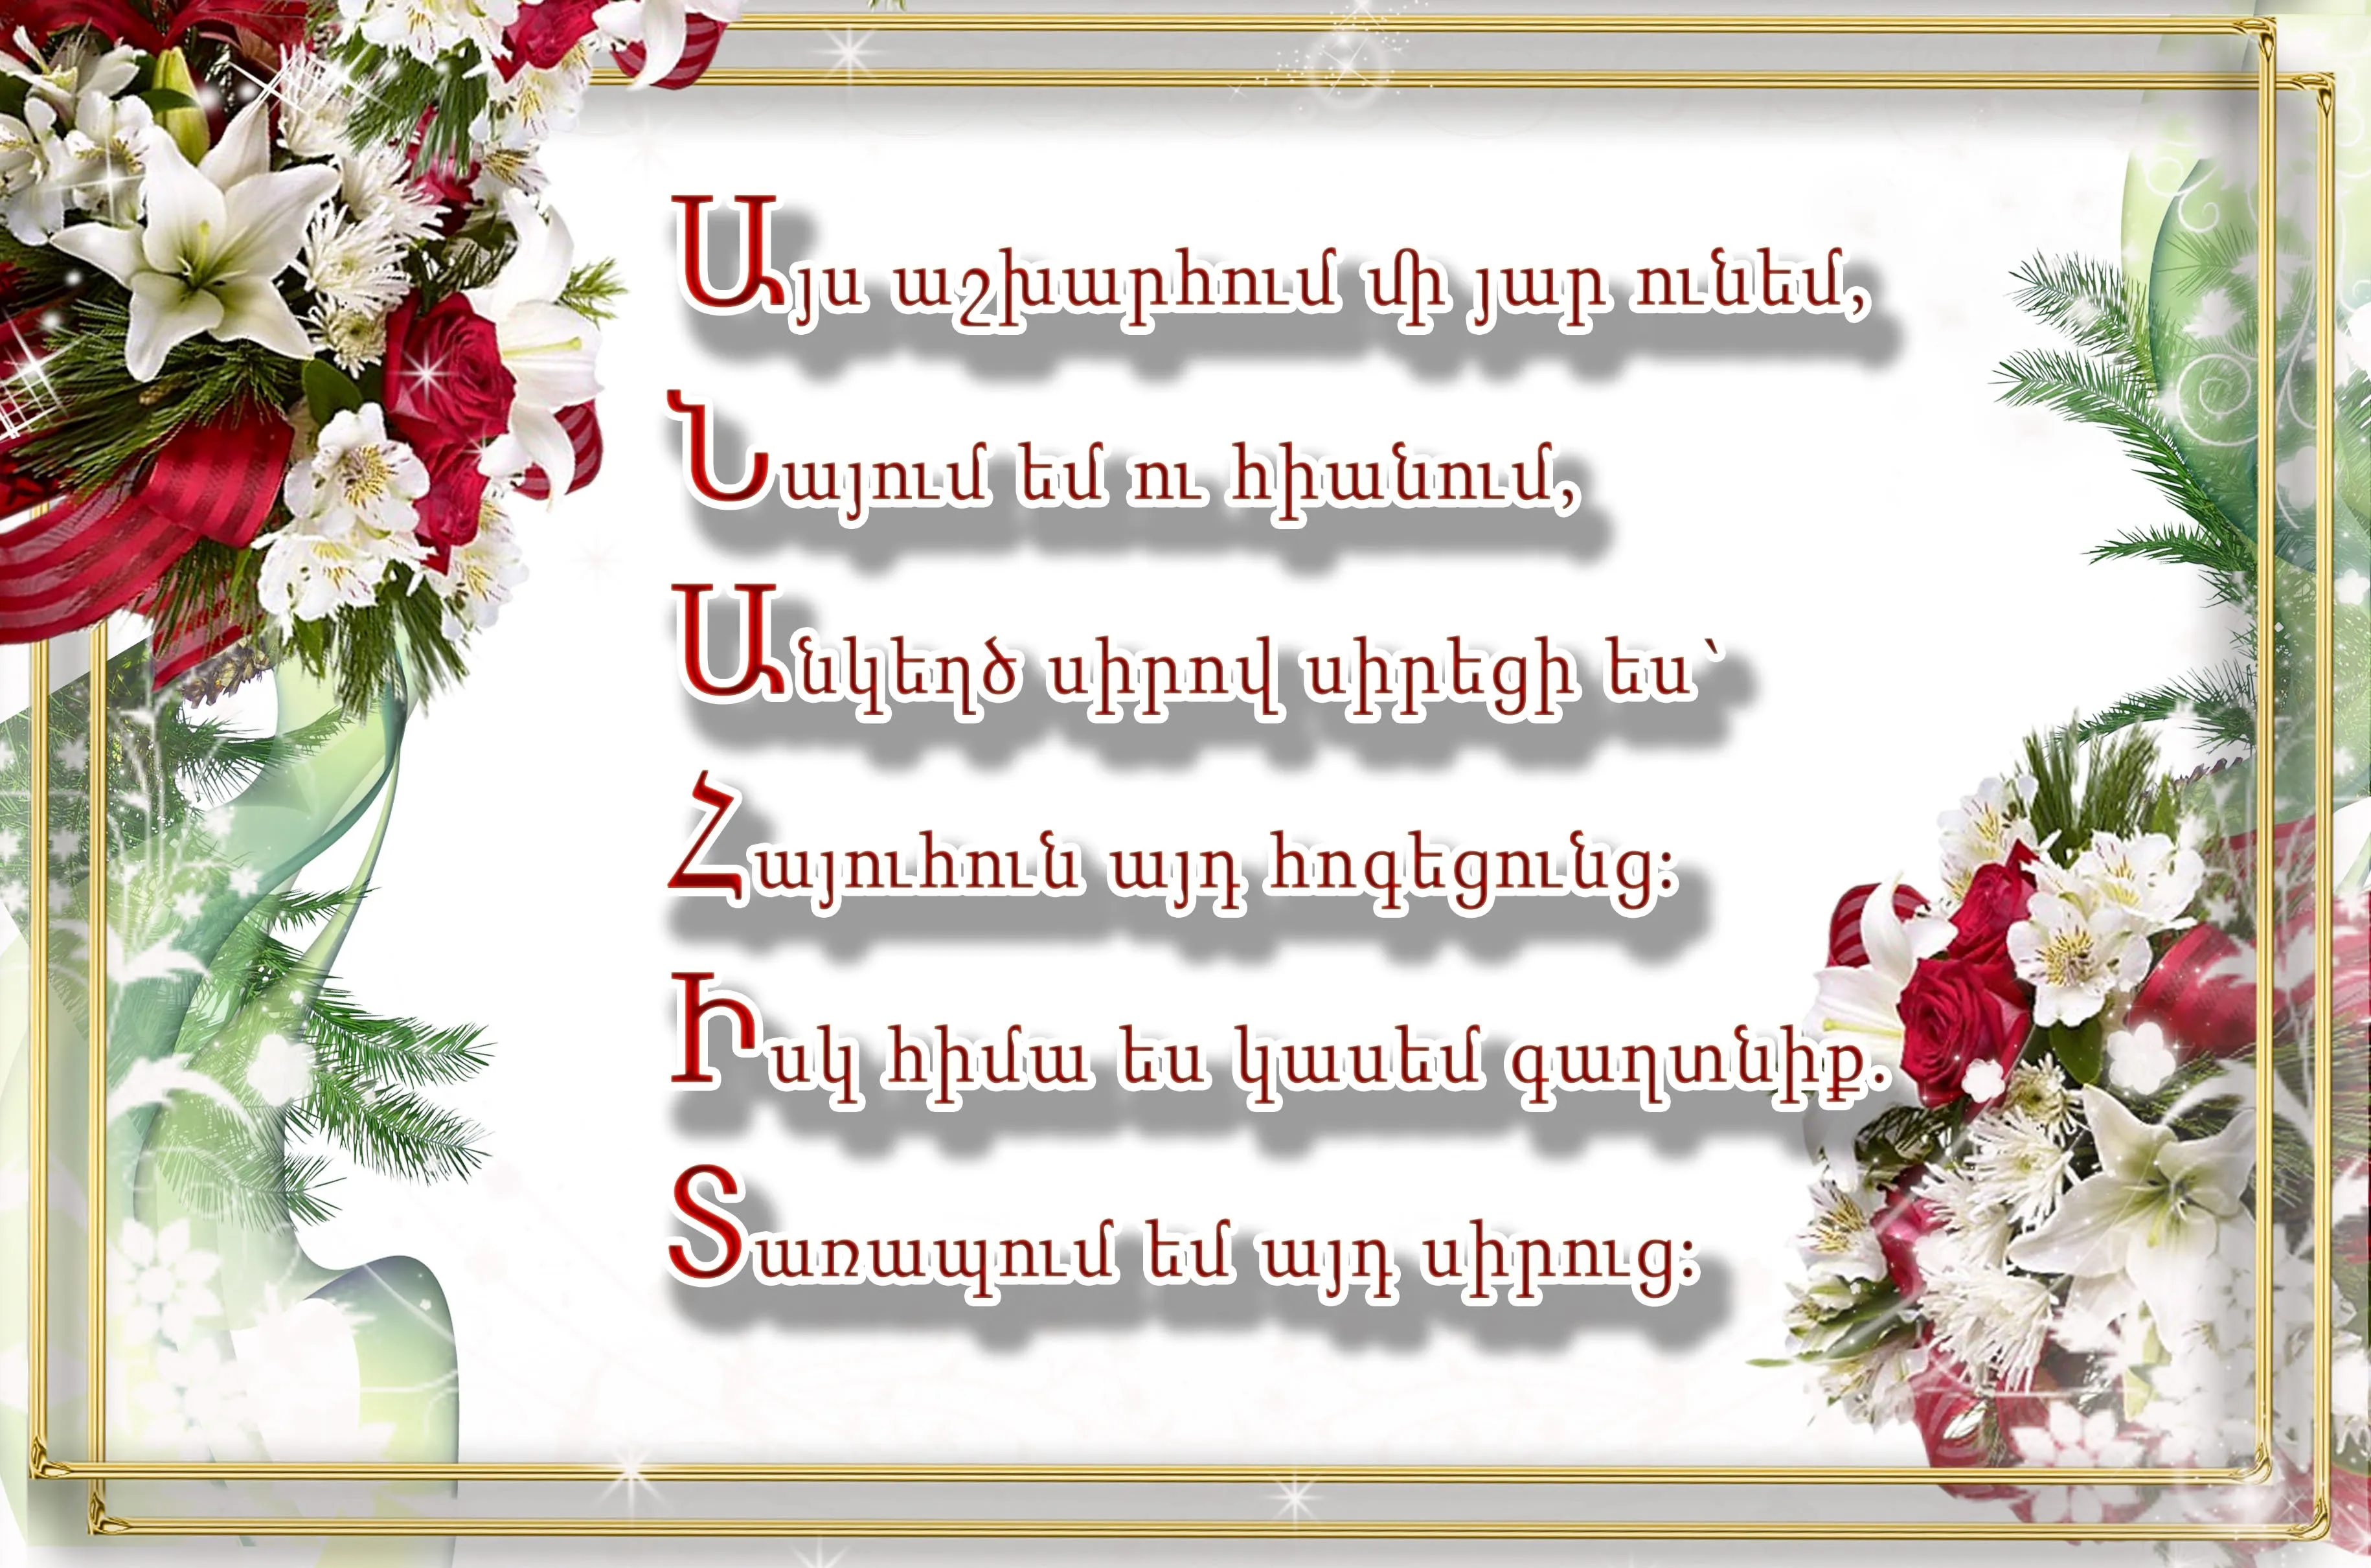 Поздравление с 8 на армянском языке. Поздравления с днём рождения на армянском языке. Армянские пожелания с днем рождения. Поздравления с днём рождения женщине на армянском языке. Армянская открытка с днем рождения.